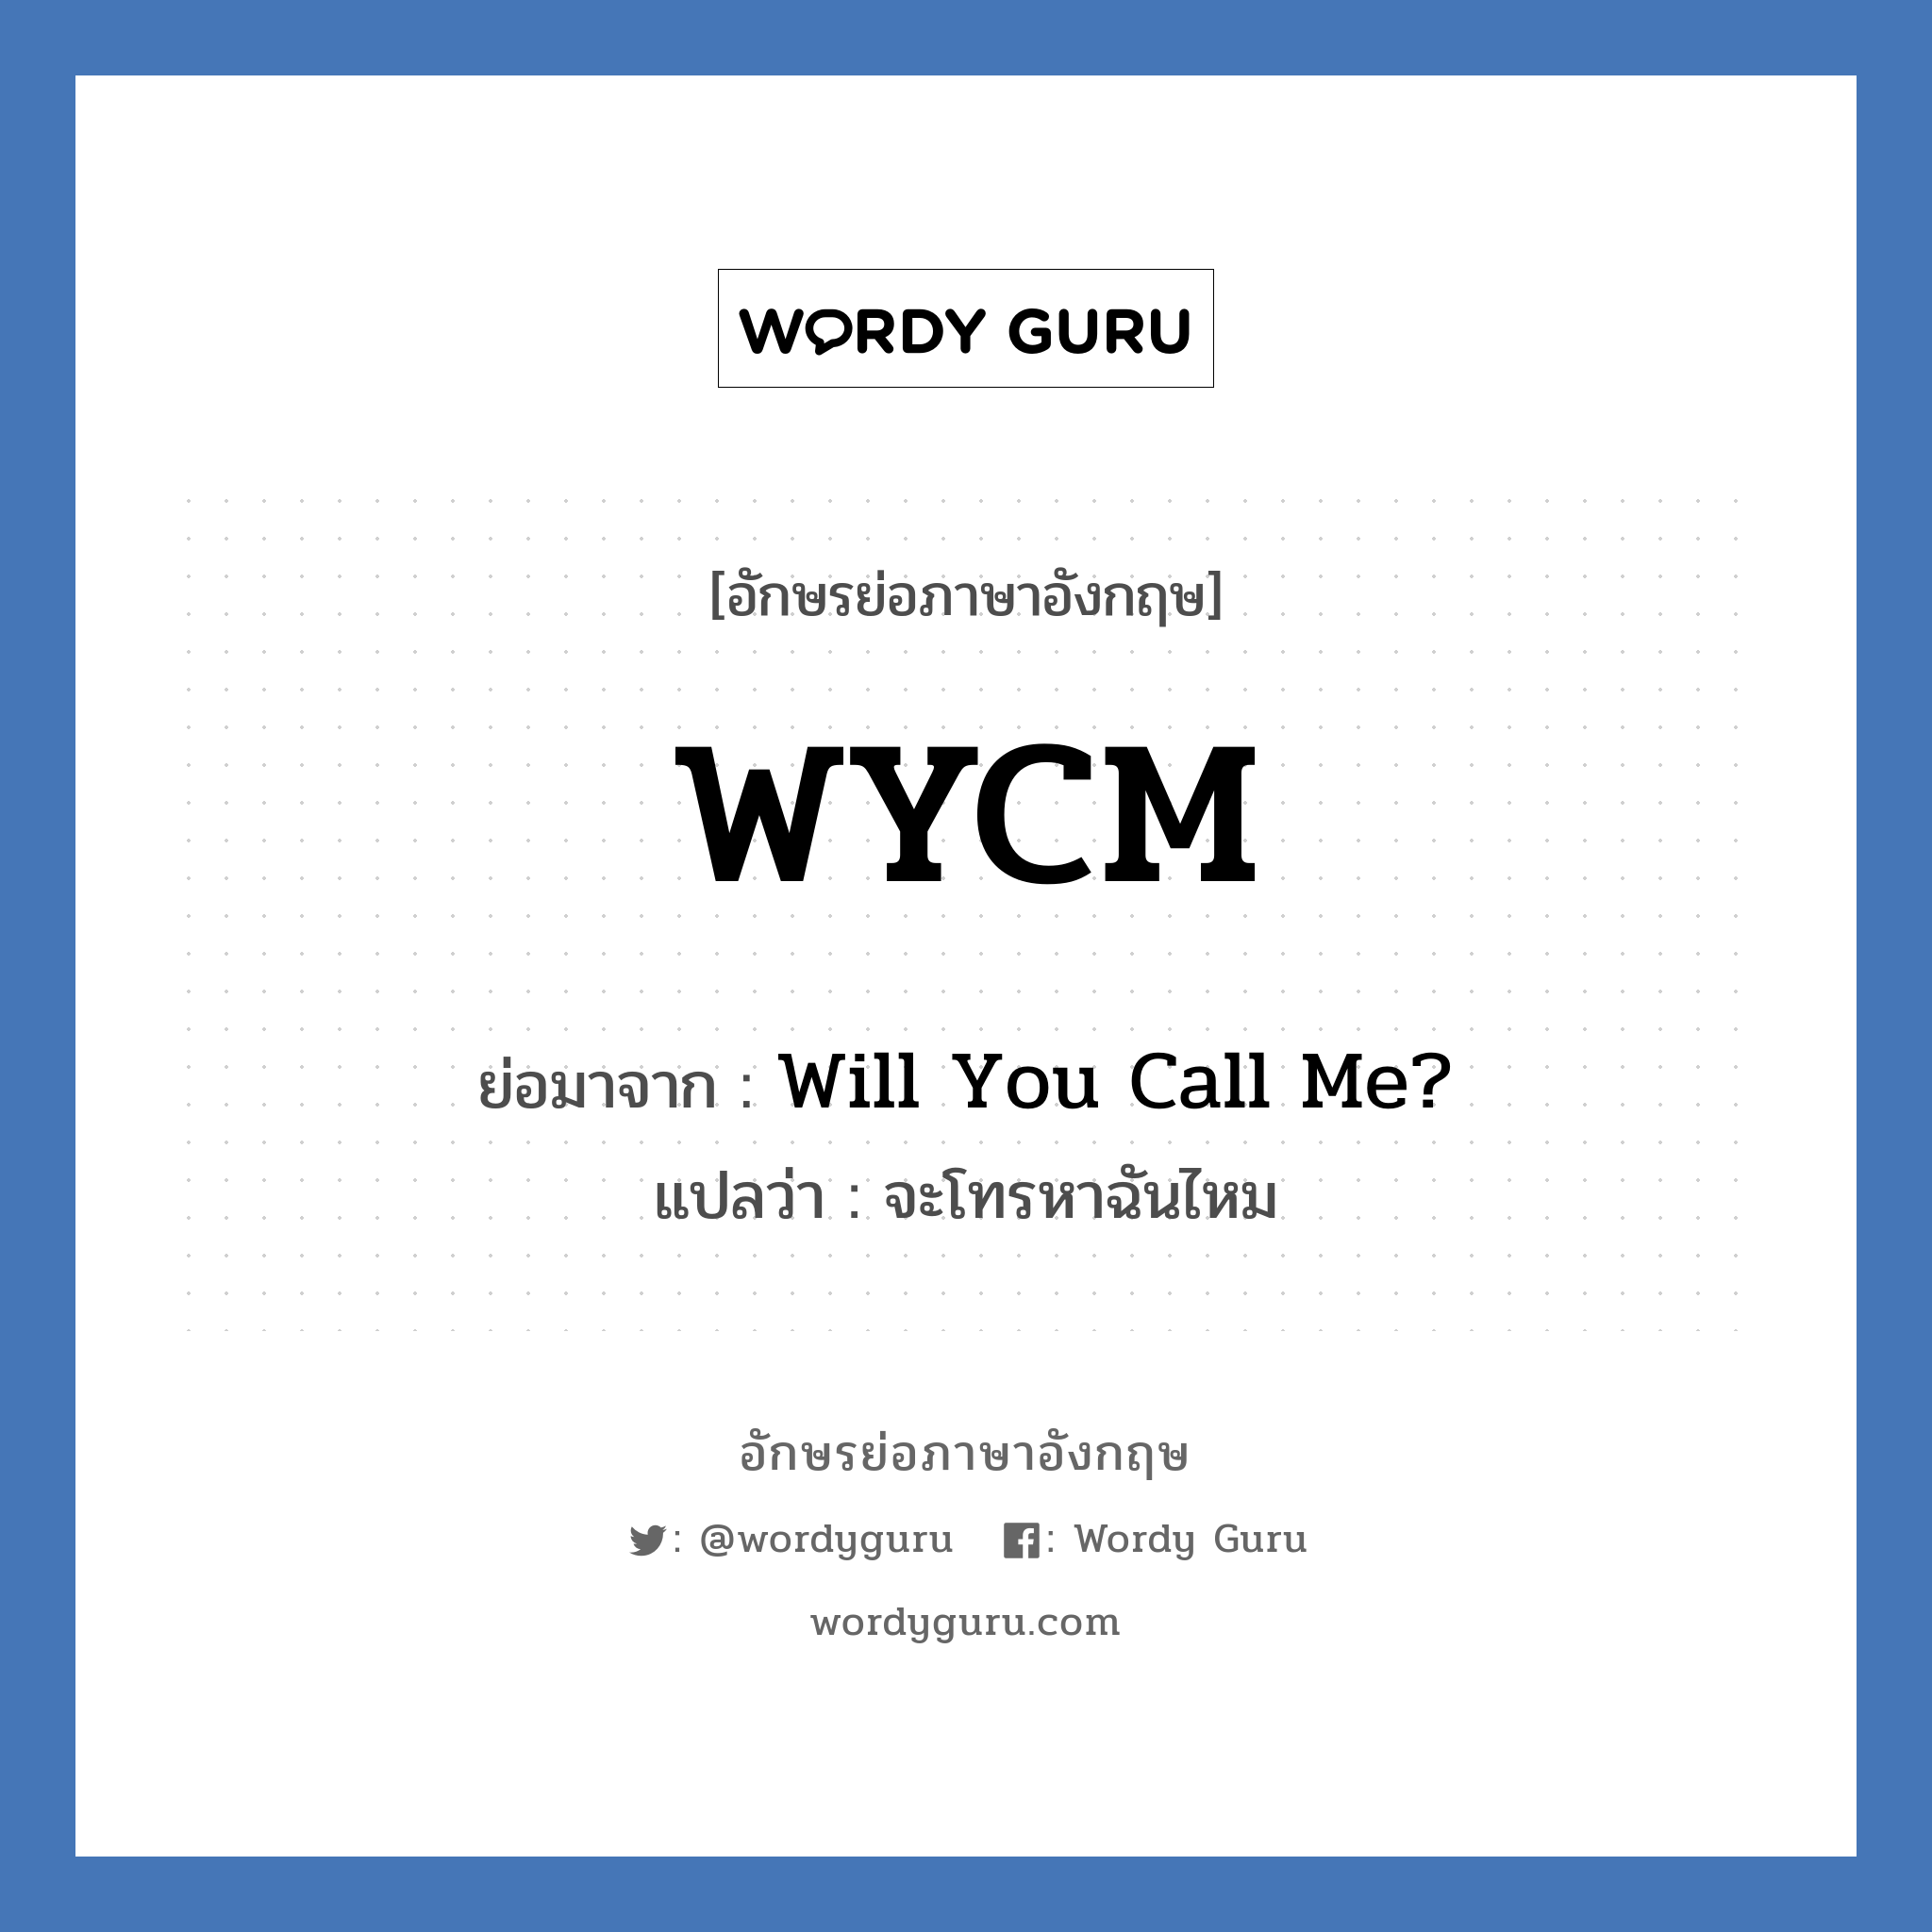 Will You Call Me? คำย่อคือ? แปลว่า?, อักษรย่อภาษาอังกฤษ Will You Call Me? ย่อมาจาก WYCM แปลว่า จะโทรหาฉันไหม